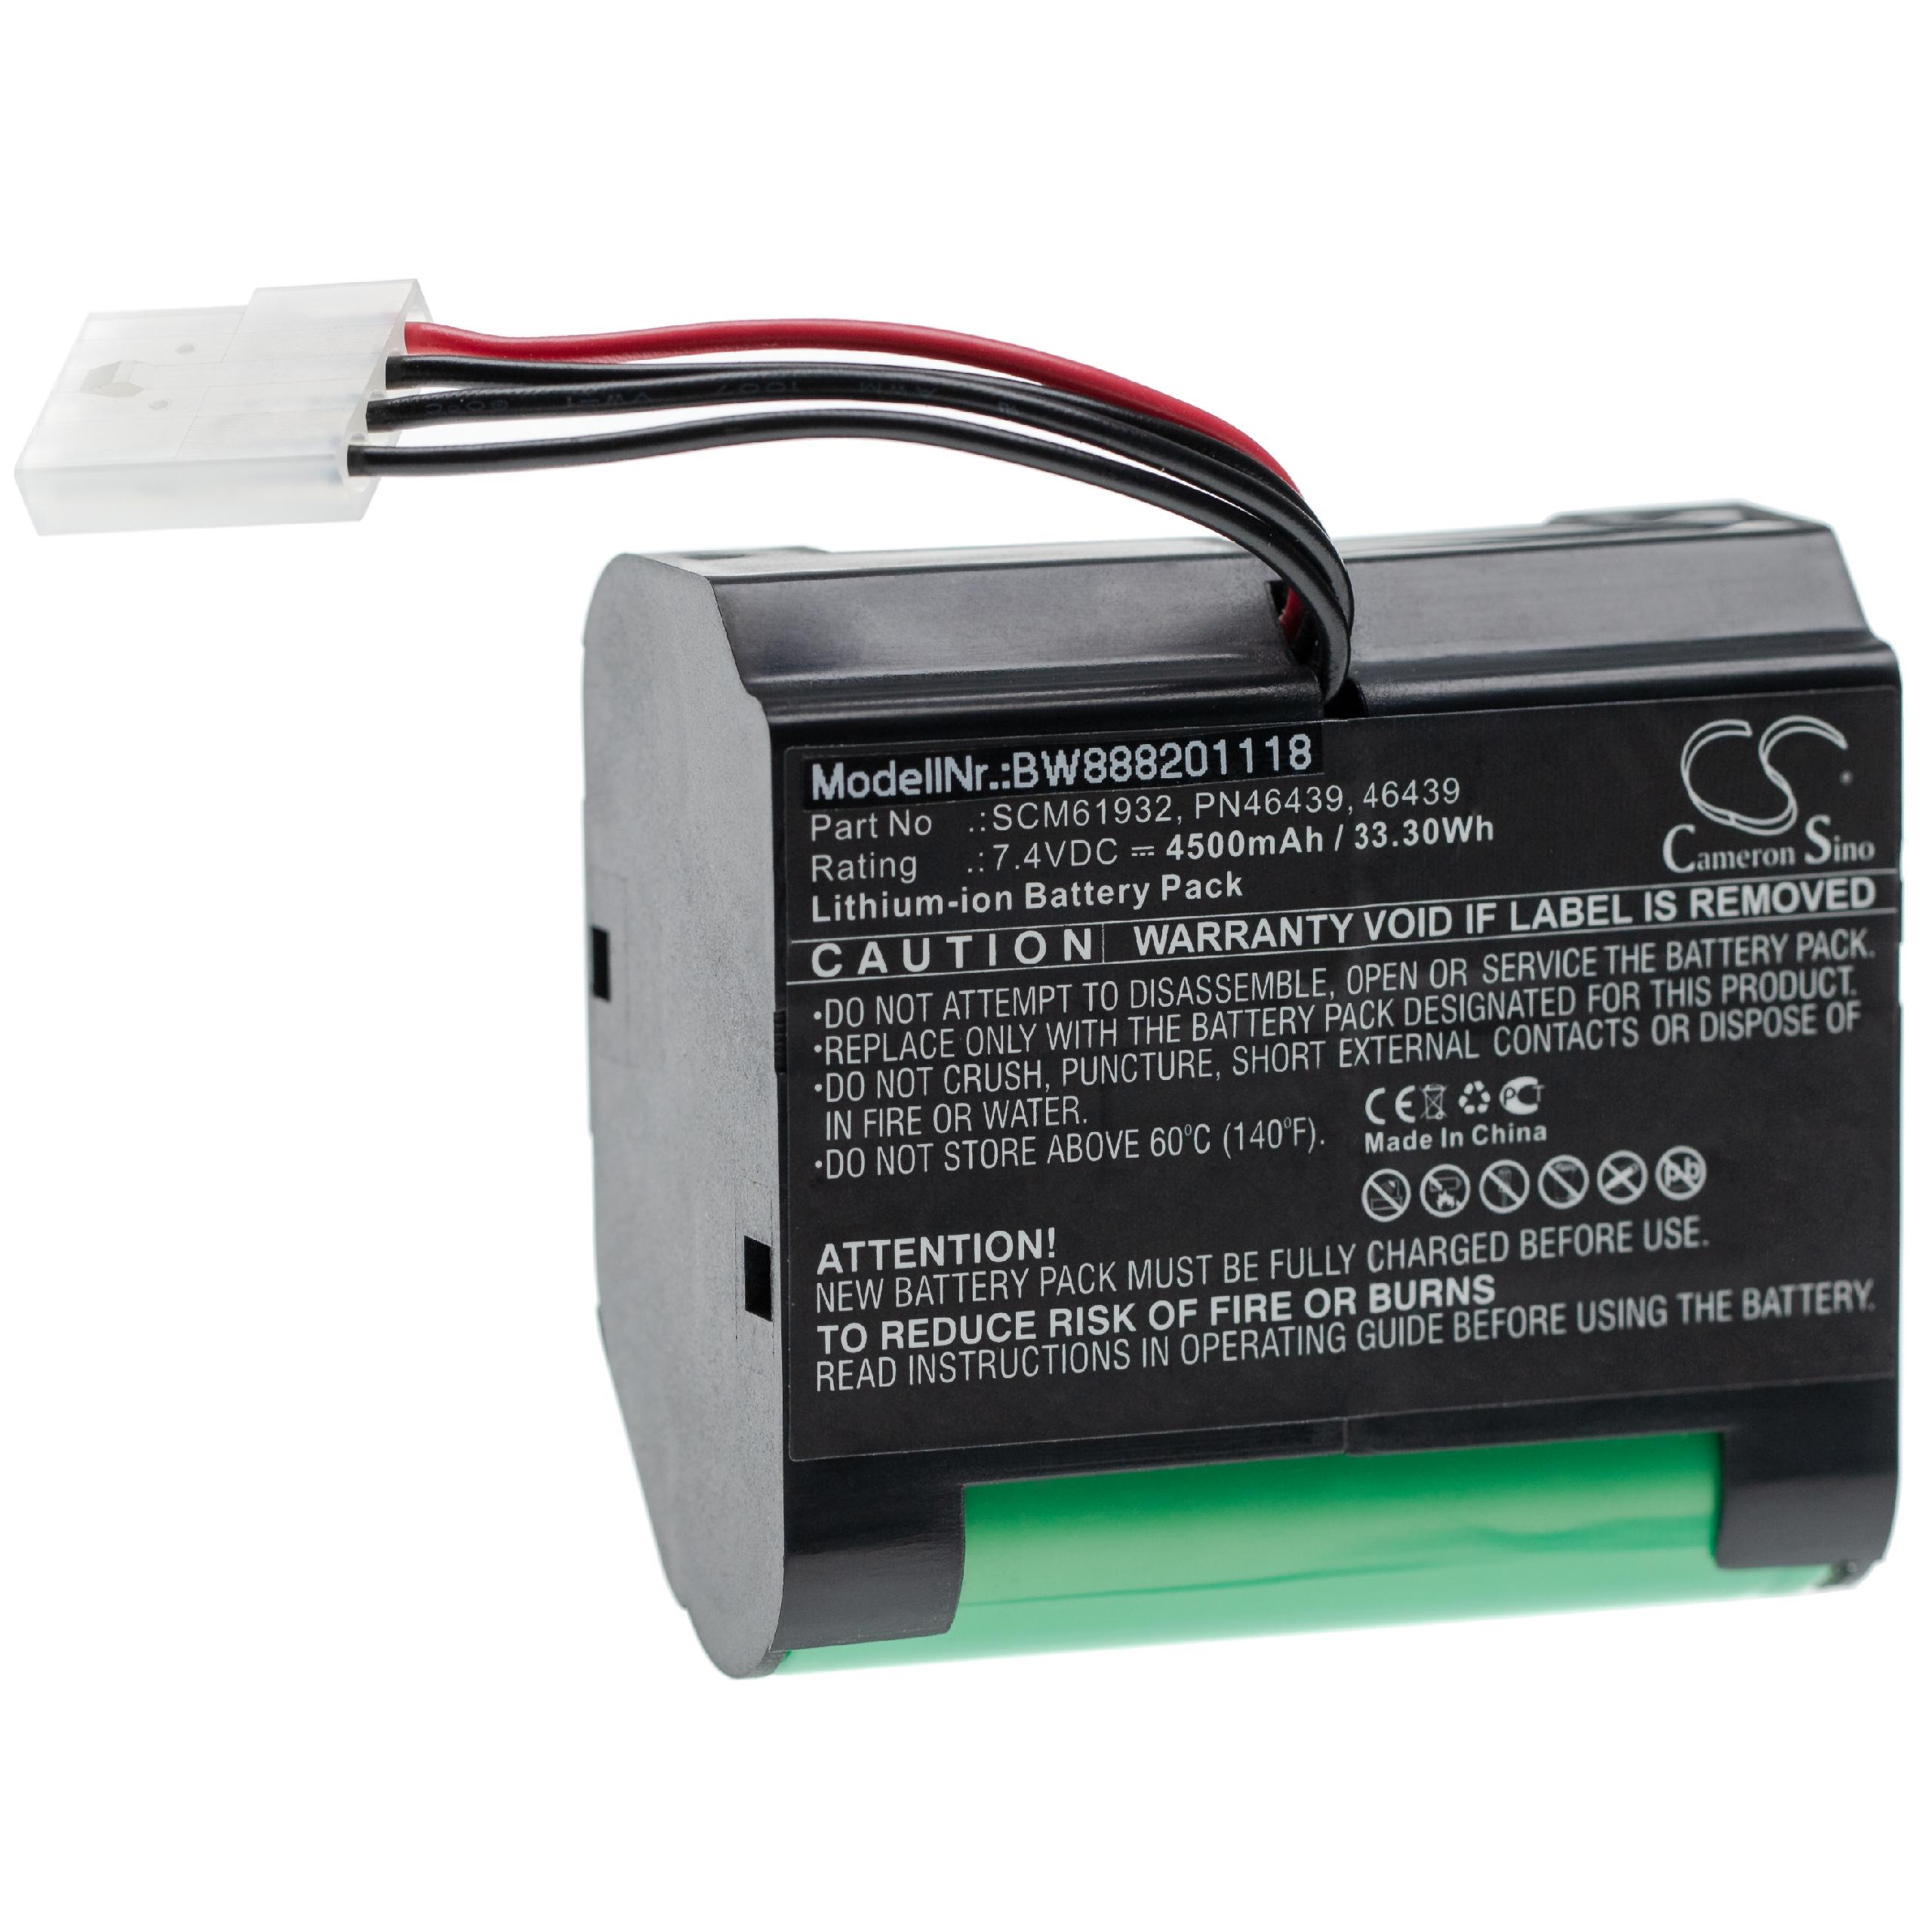 Batterie remplace Vorwerk SCM61932, PN46439, 46439 pour robot aspirateur - 4500mAh 7,4V Li-ion